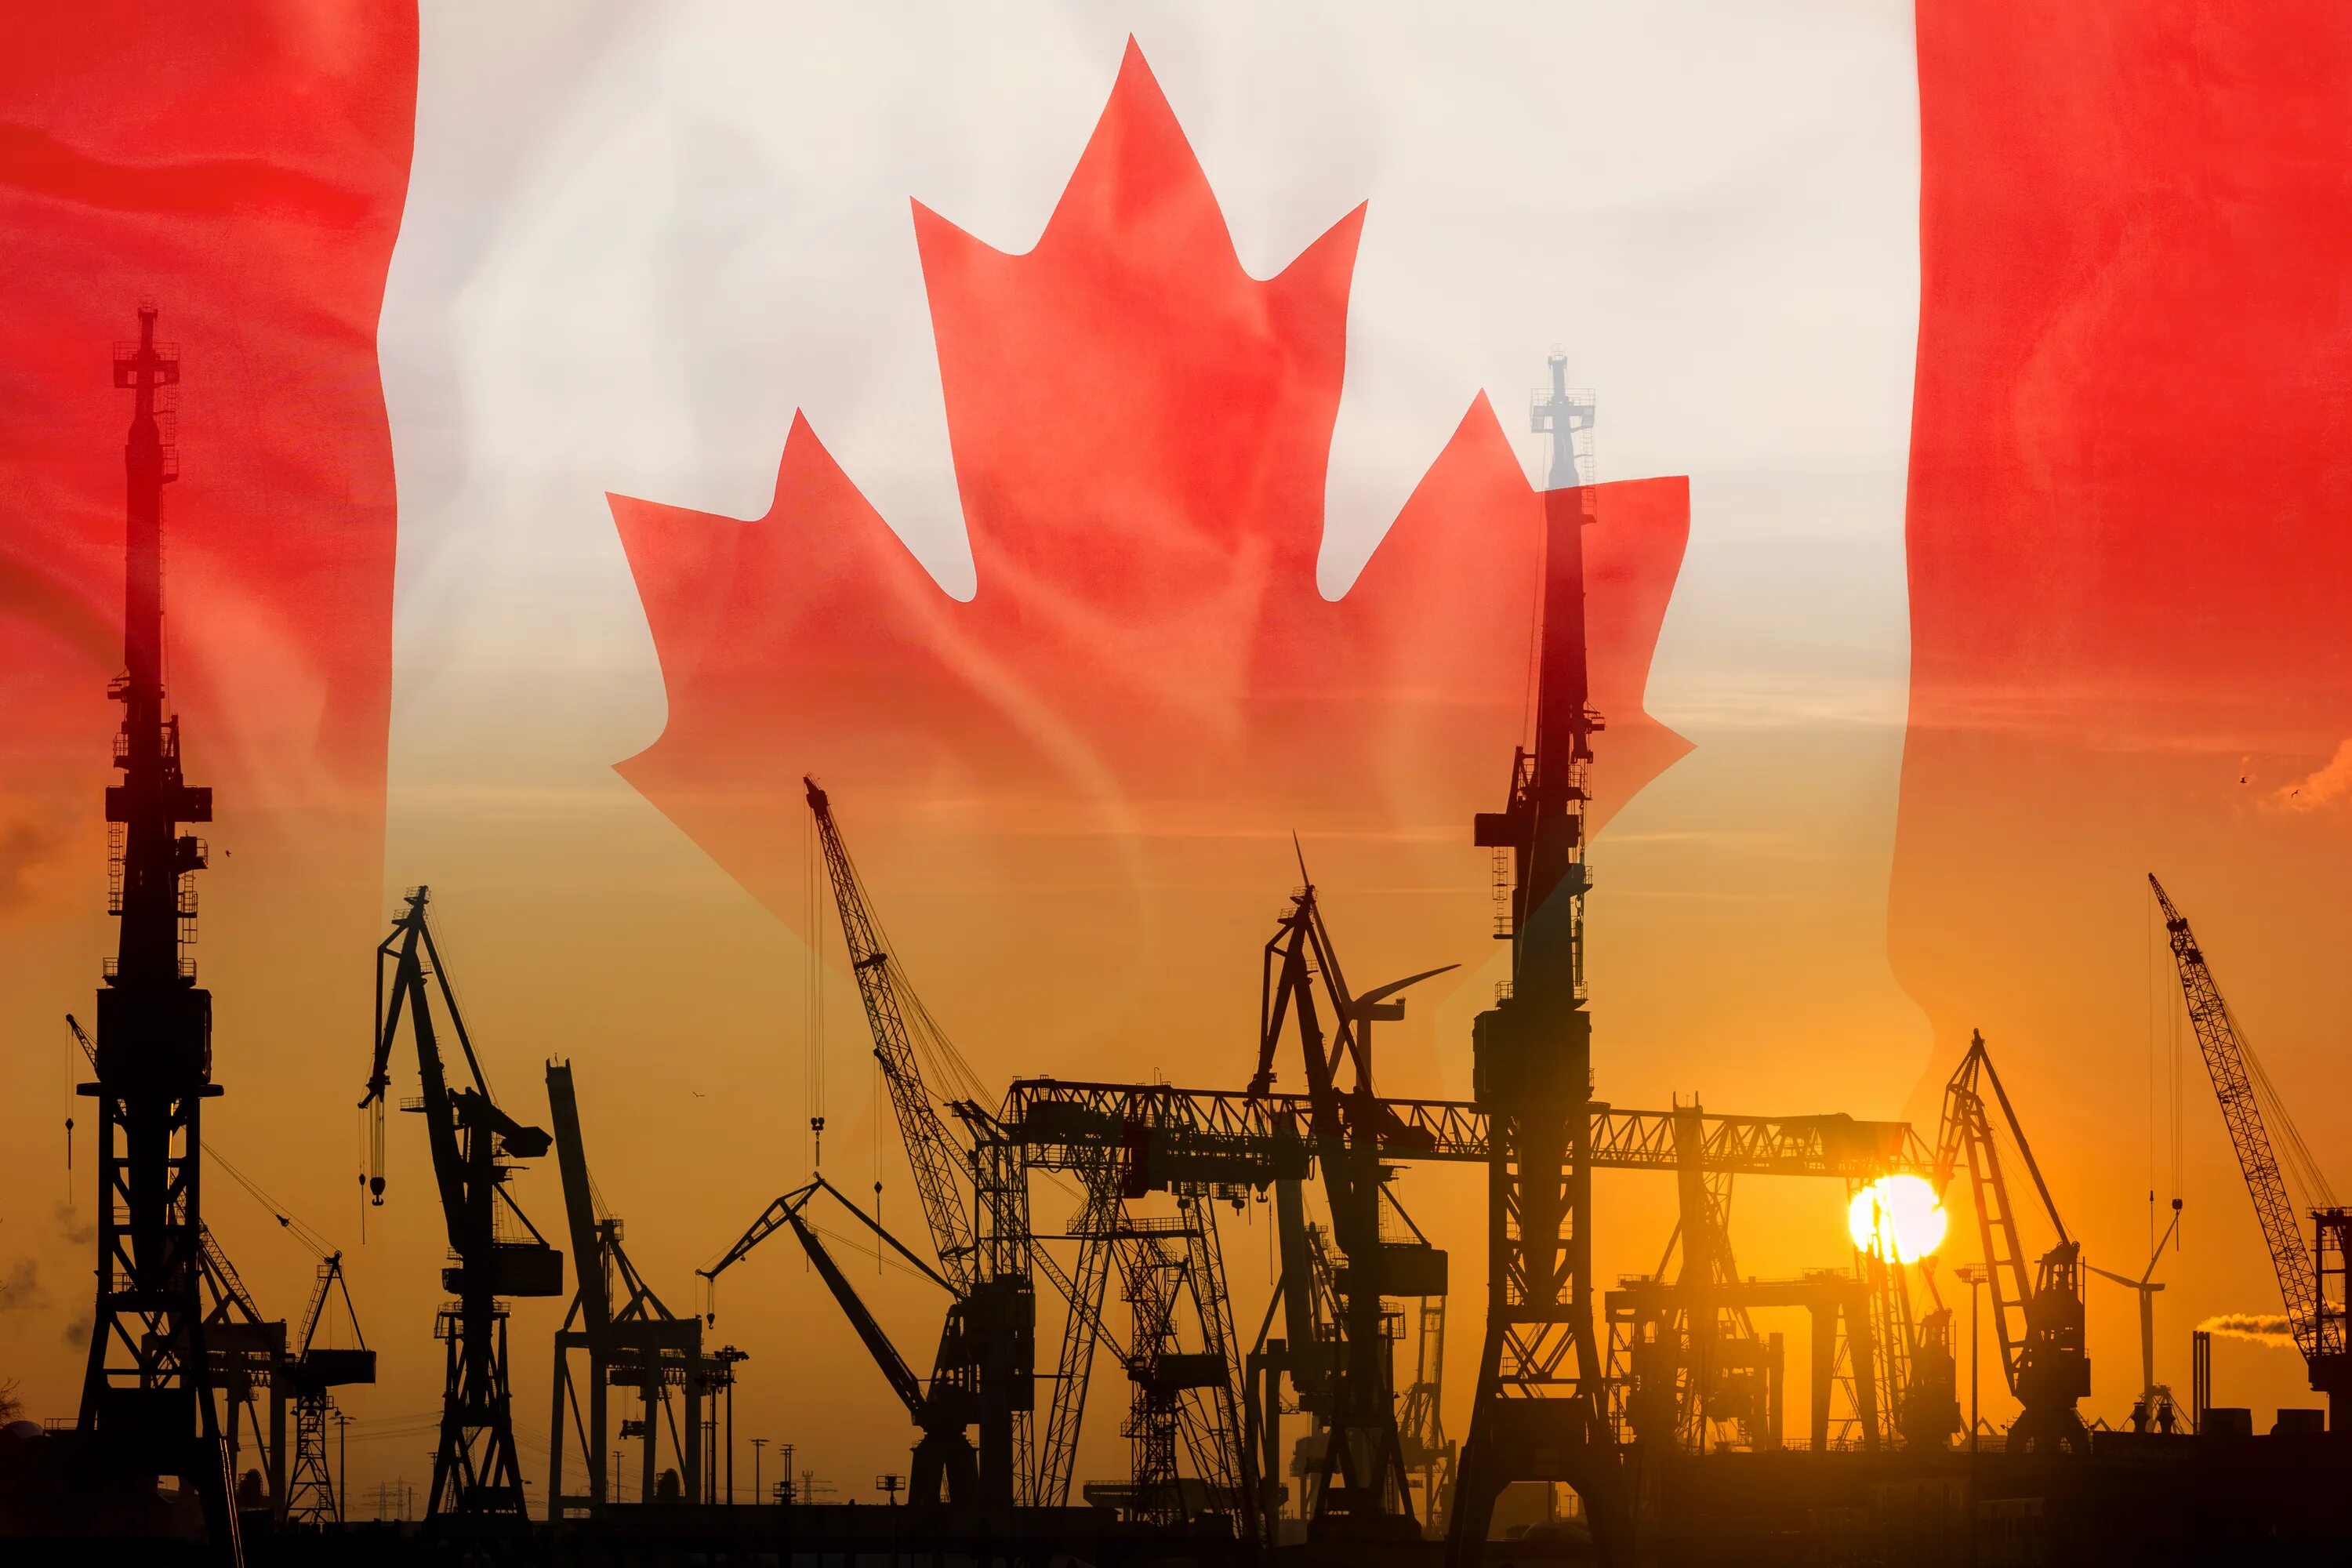 Какая промышленность развита в канаде. Энергодобывающая промышленность Канады. Хим промышленность Канады. Химическая промышленность Канады. Нефтяная промышленность Канады.